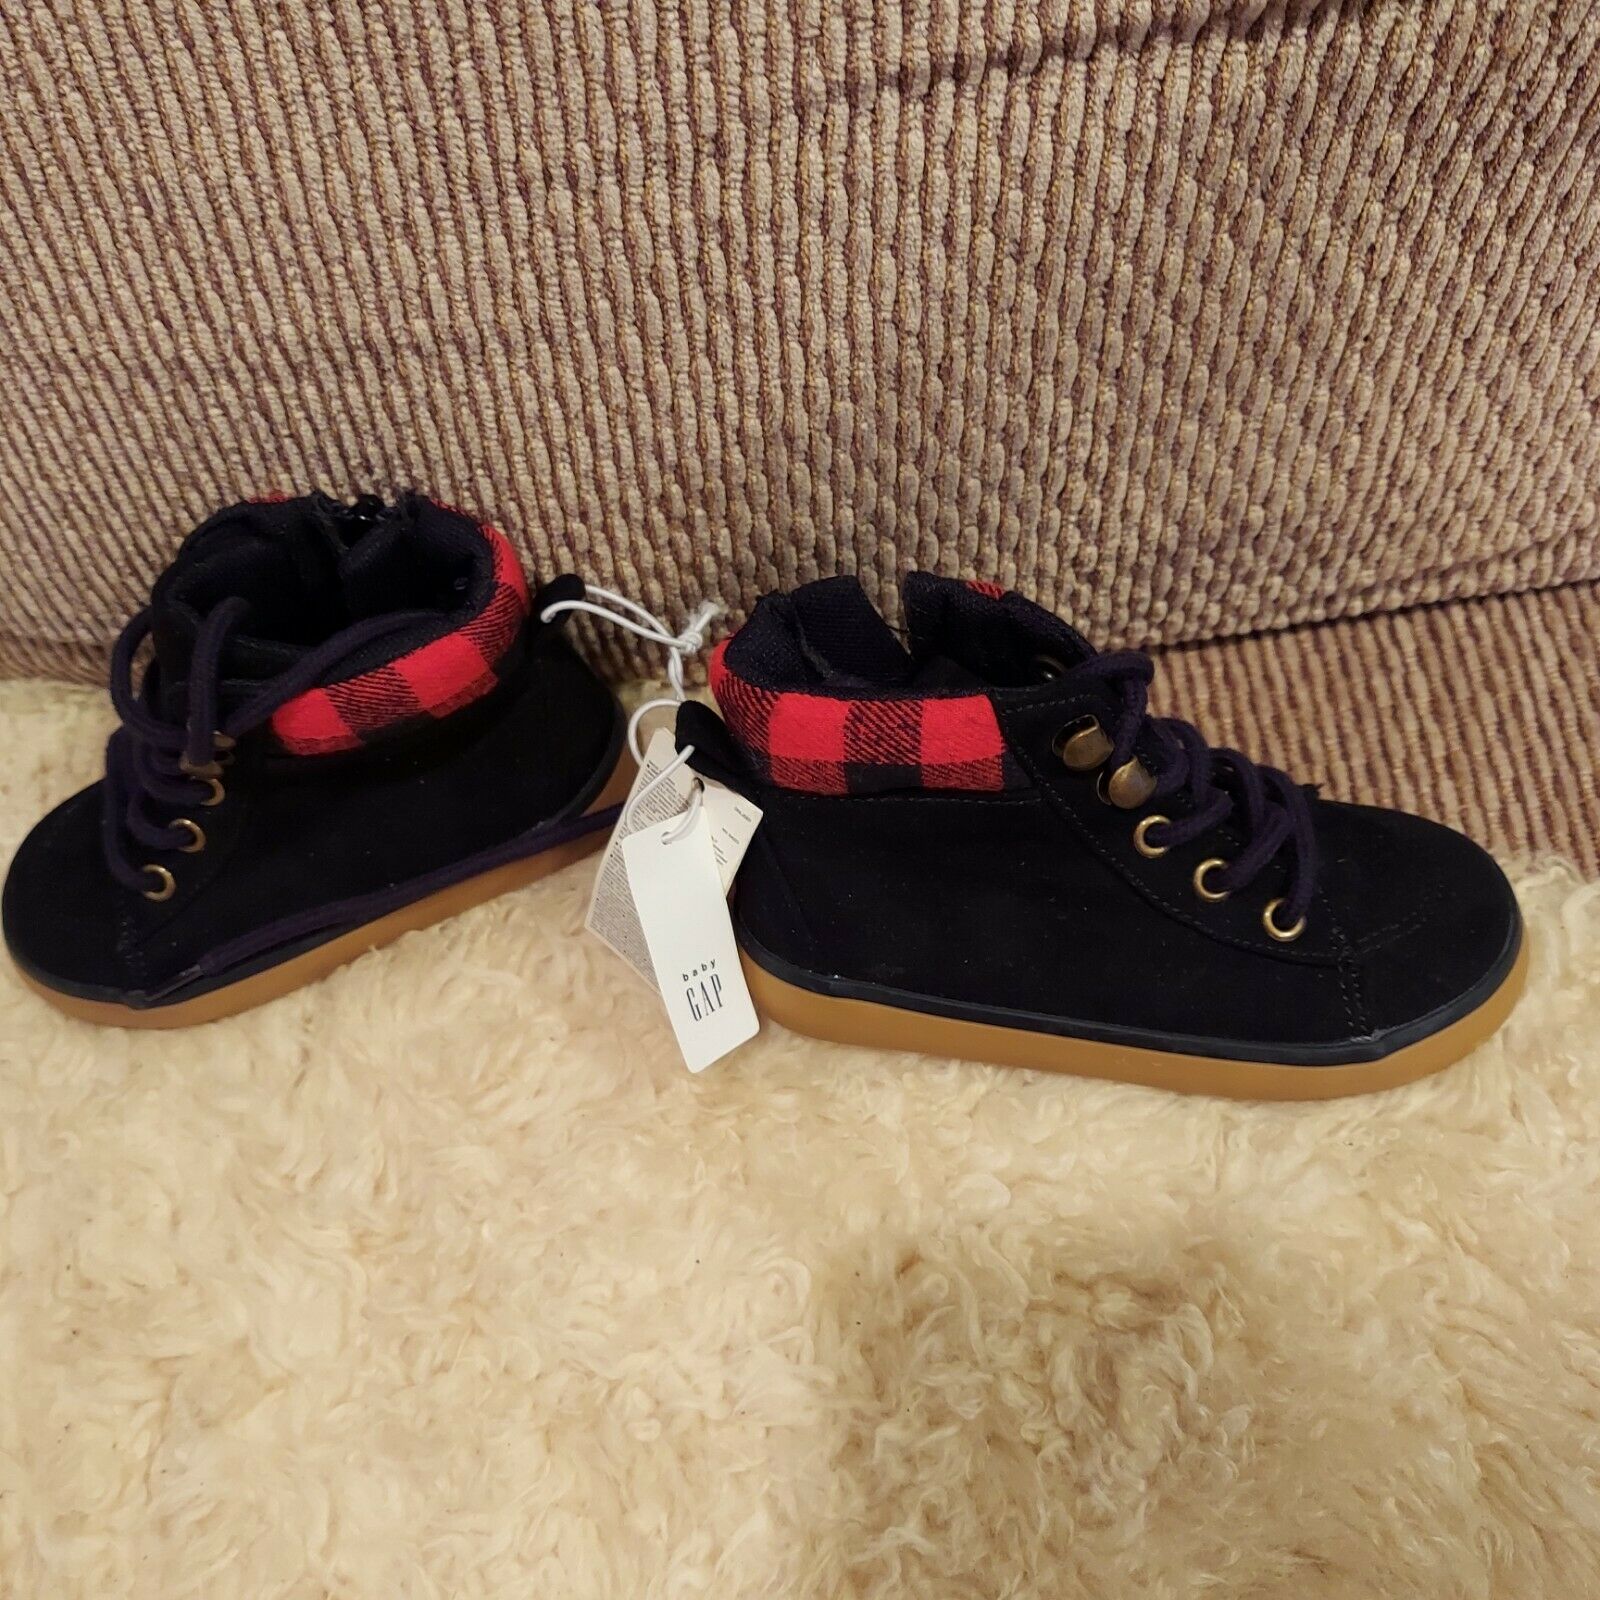 Gap Shoes |Gap Toddler Boy Black Lace up Dress Shoes/Size 7